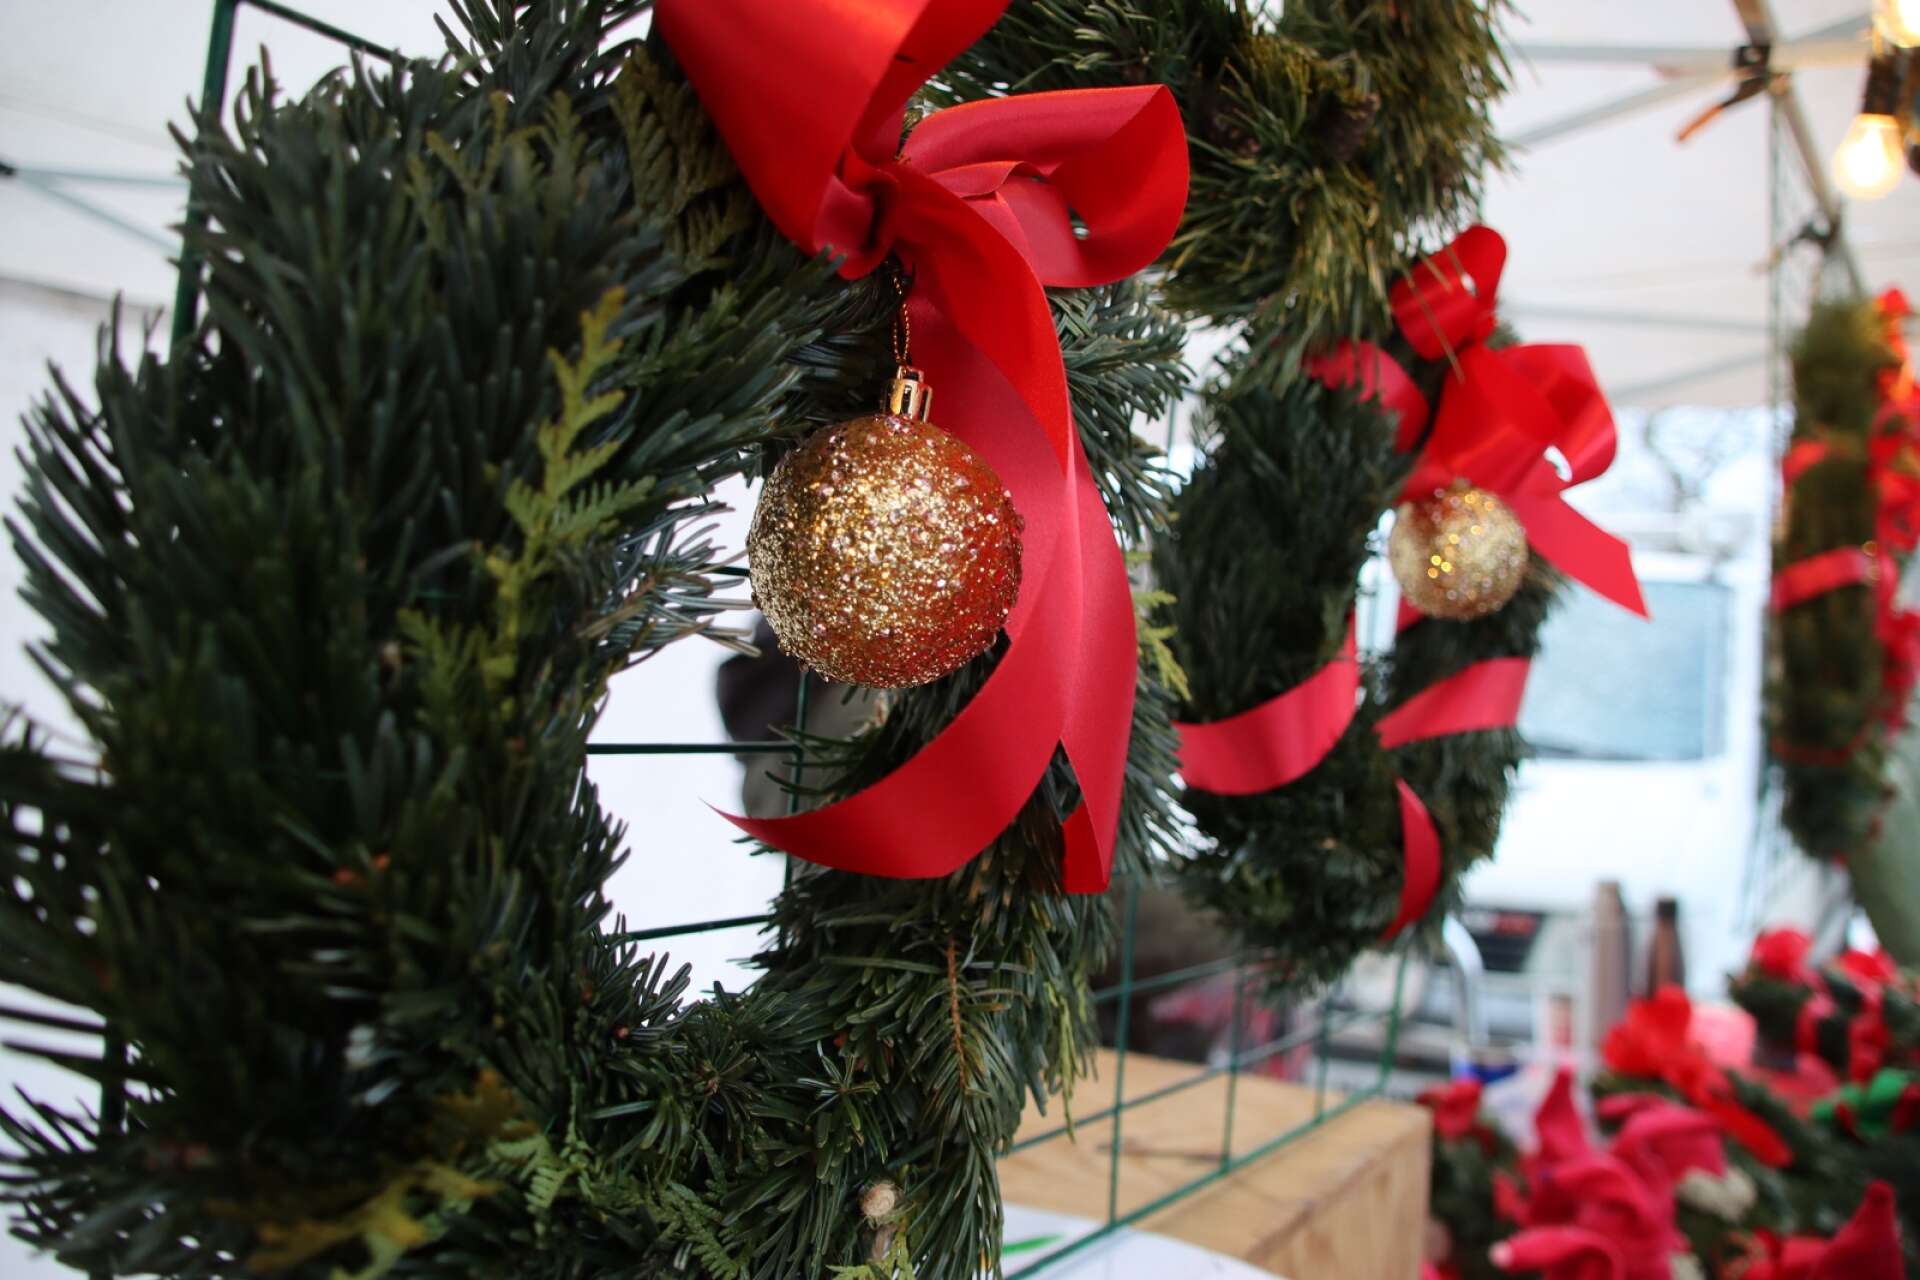 Filipstads julmarknad blev en fest för hela familjen. Det såldes juldekorationer, lotter och hembakat, bland annat. Marknaden arrangerades av Filipstadsföretag i samverkan. Greeks handelsträdgård sålde juldekorationer.